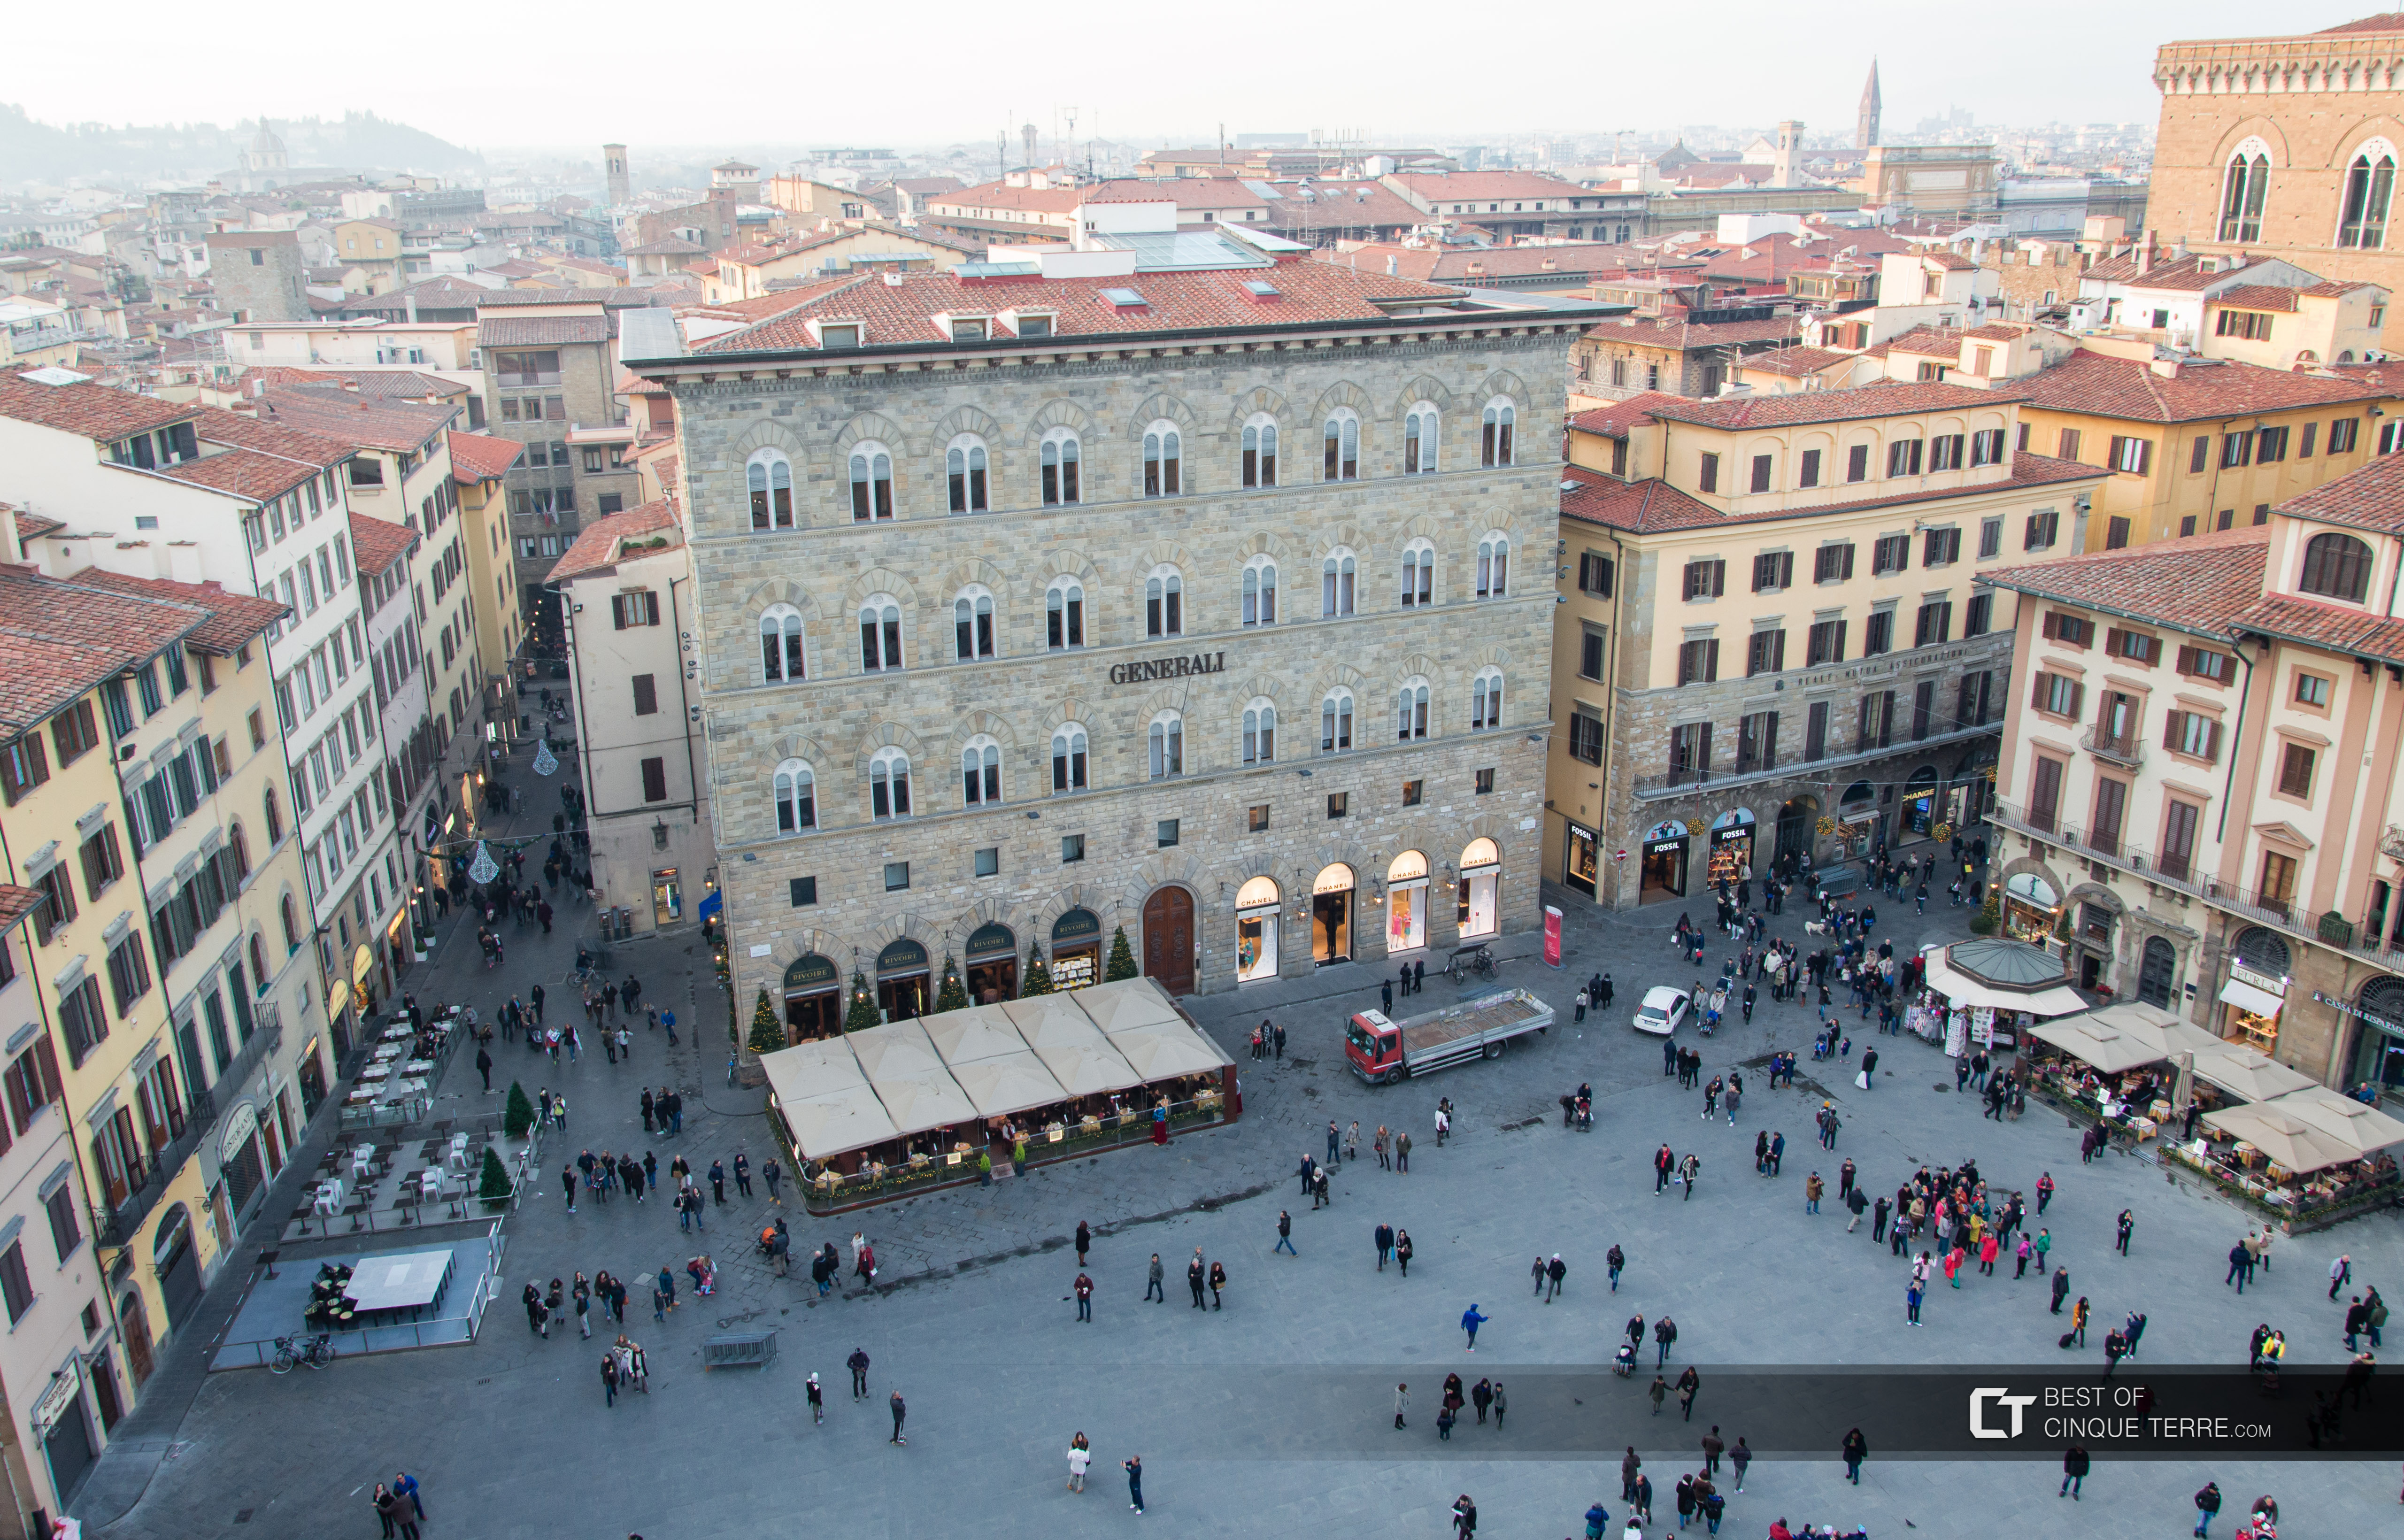 Площадь Синьории, вид с башни Палаццо Веккьо, Флоренция, Италия